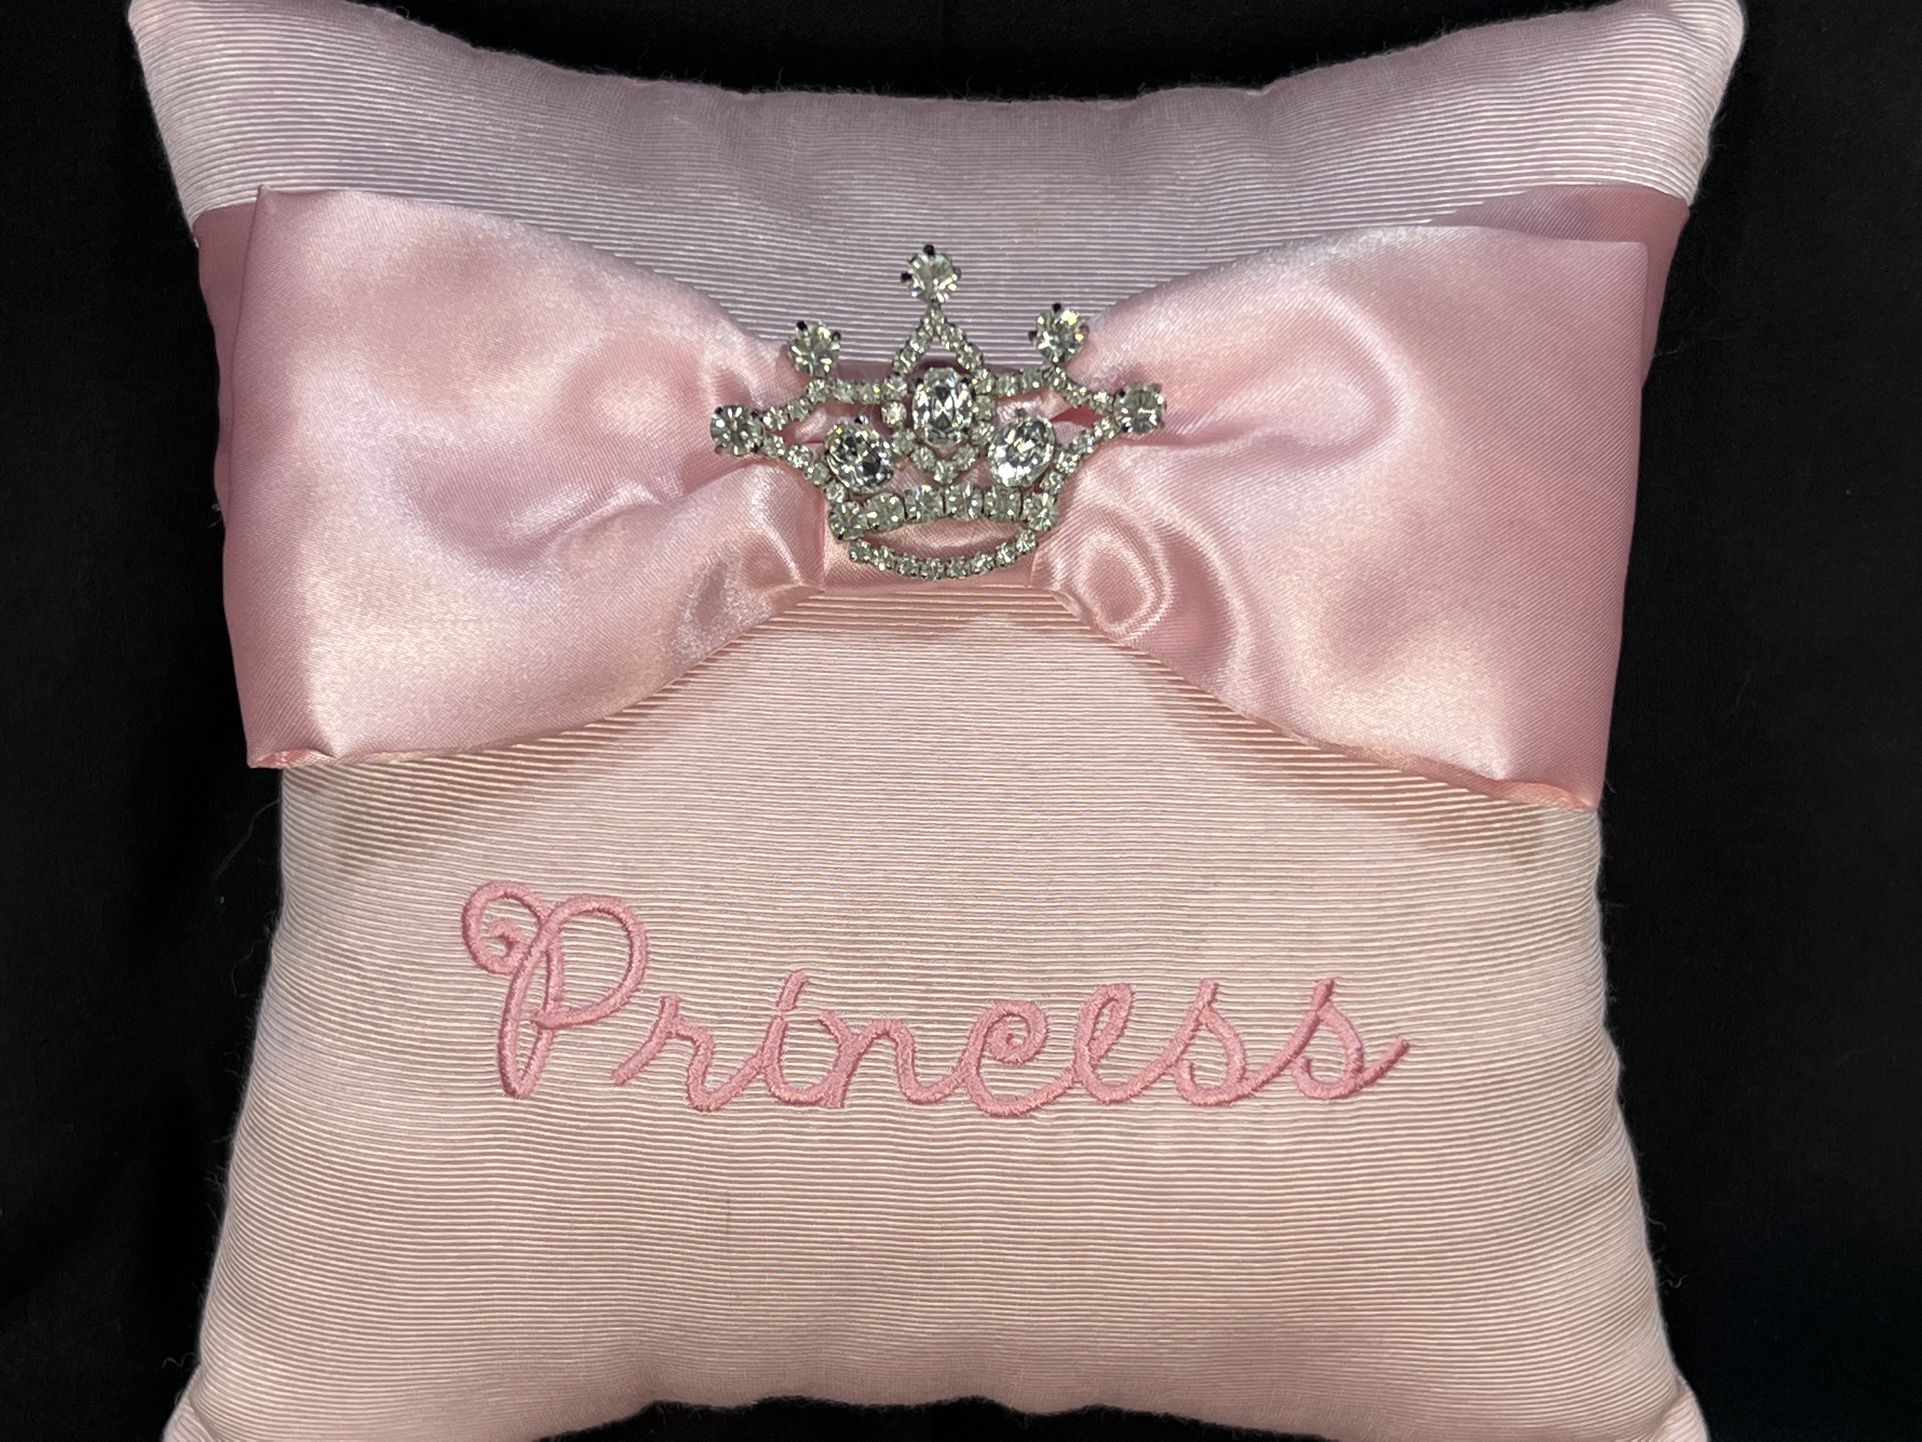 MUD PIE “Princess” Pillow